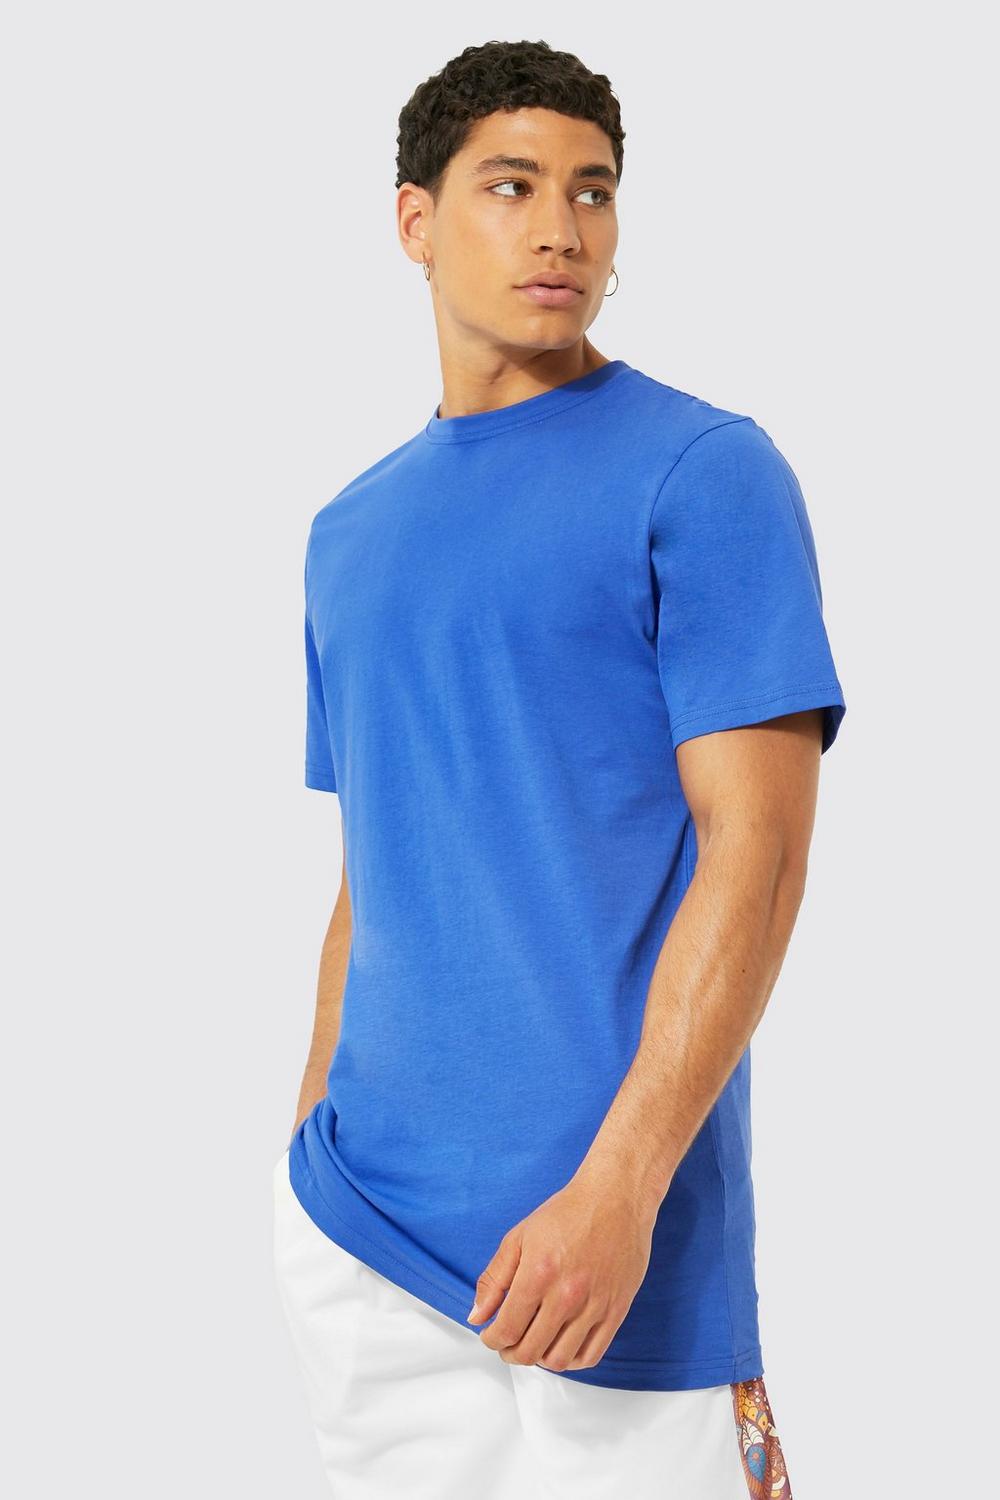 Plain T-shirt - multiple colours, multiple prices